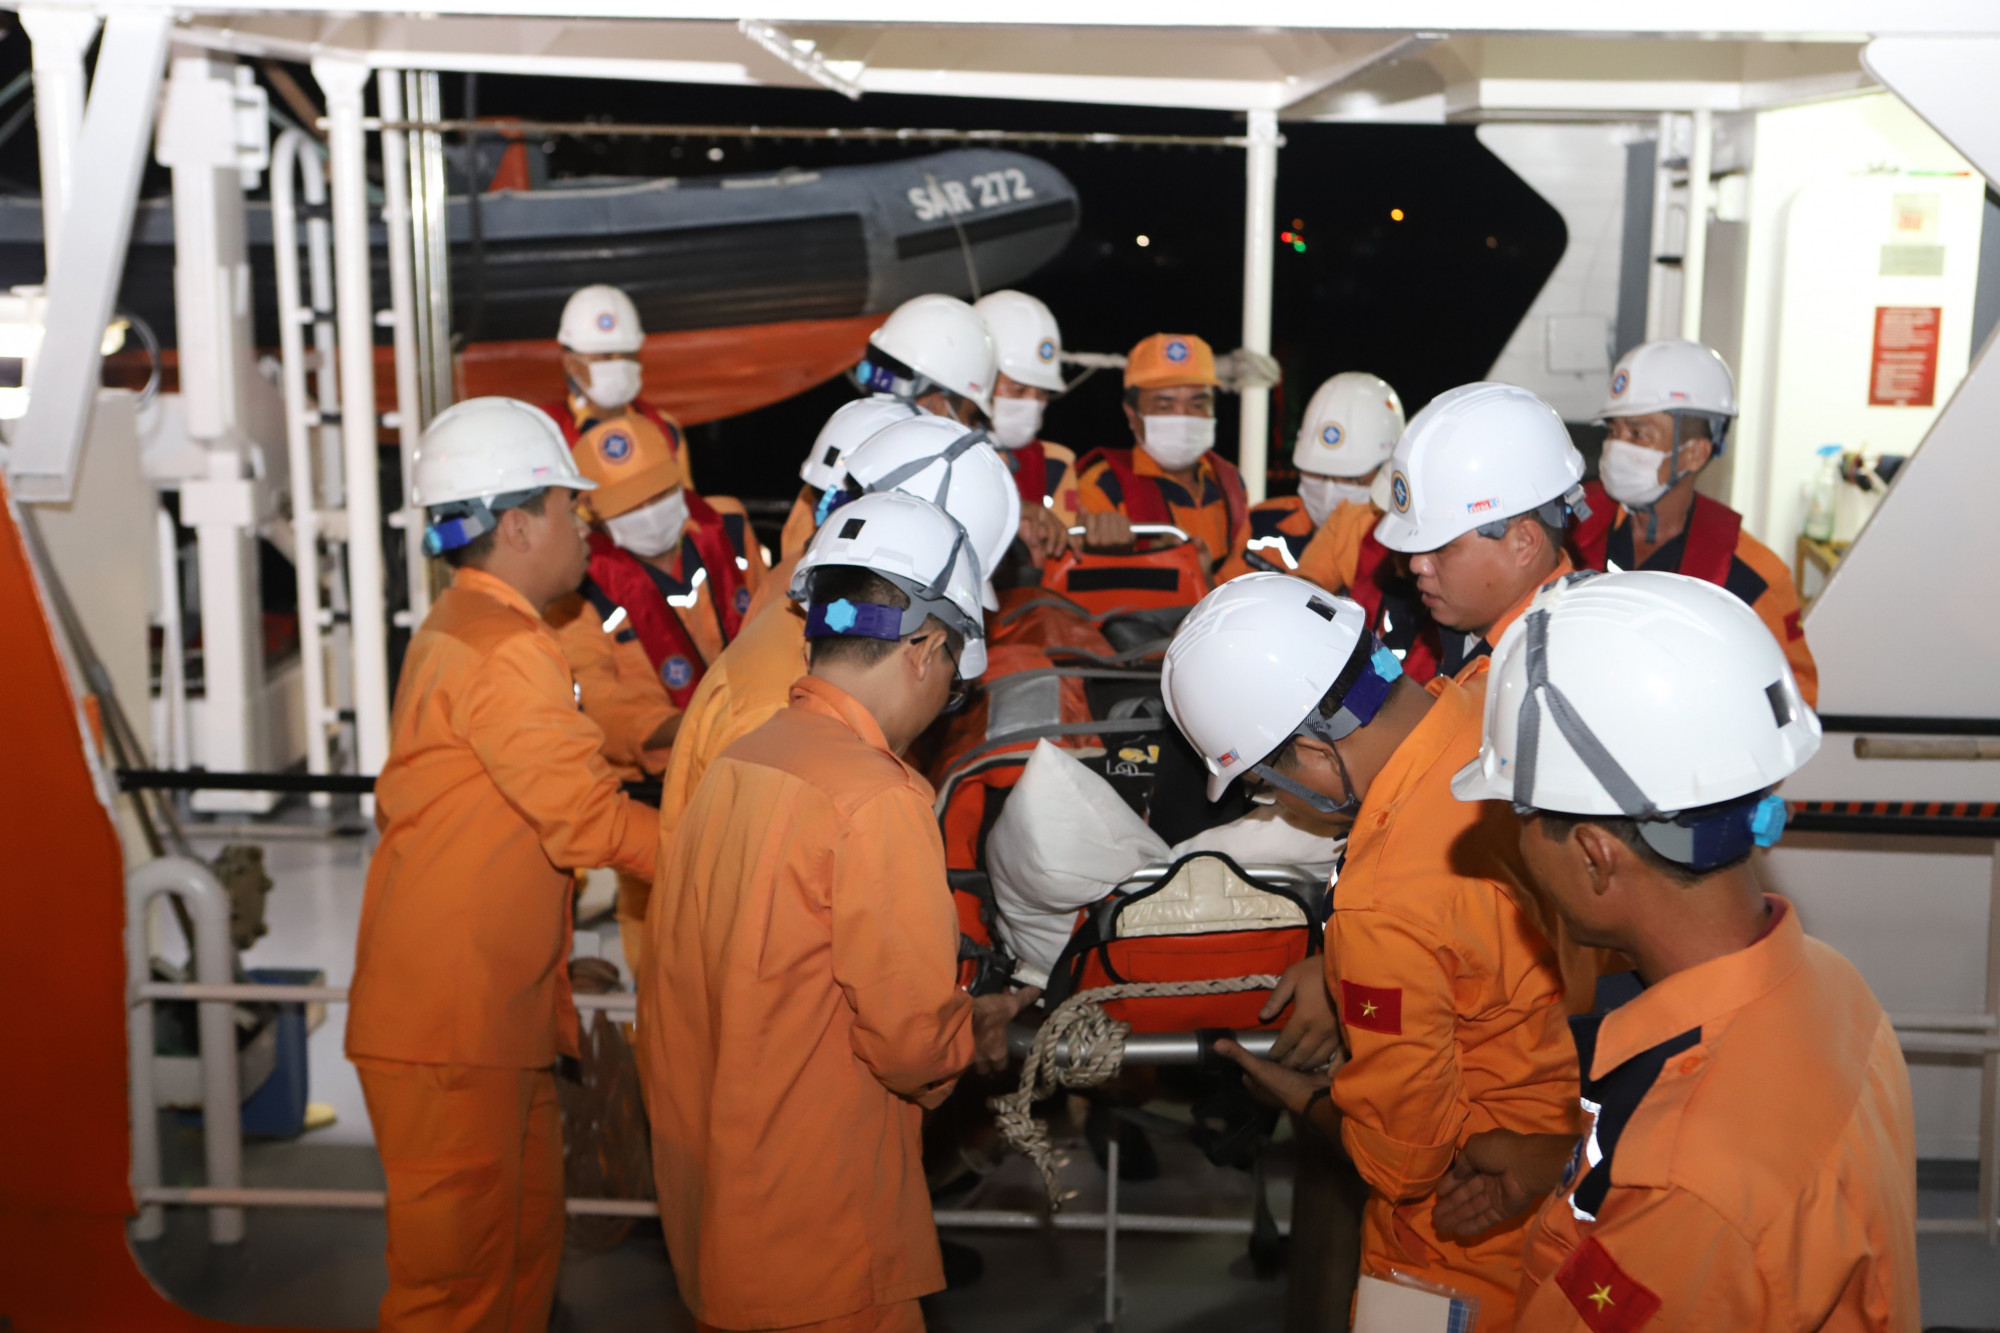 Lực lượng cứu nạn đưa thuyền viên bị gãy chân do tai nạn lao động về đến TP. Nha Trang, tỉnh Khánh Hòa để đưa đi điều trị